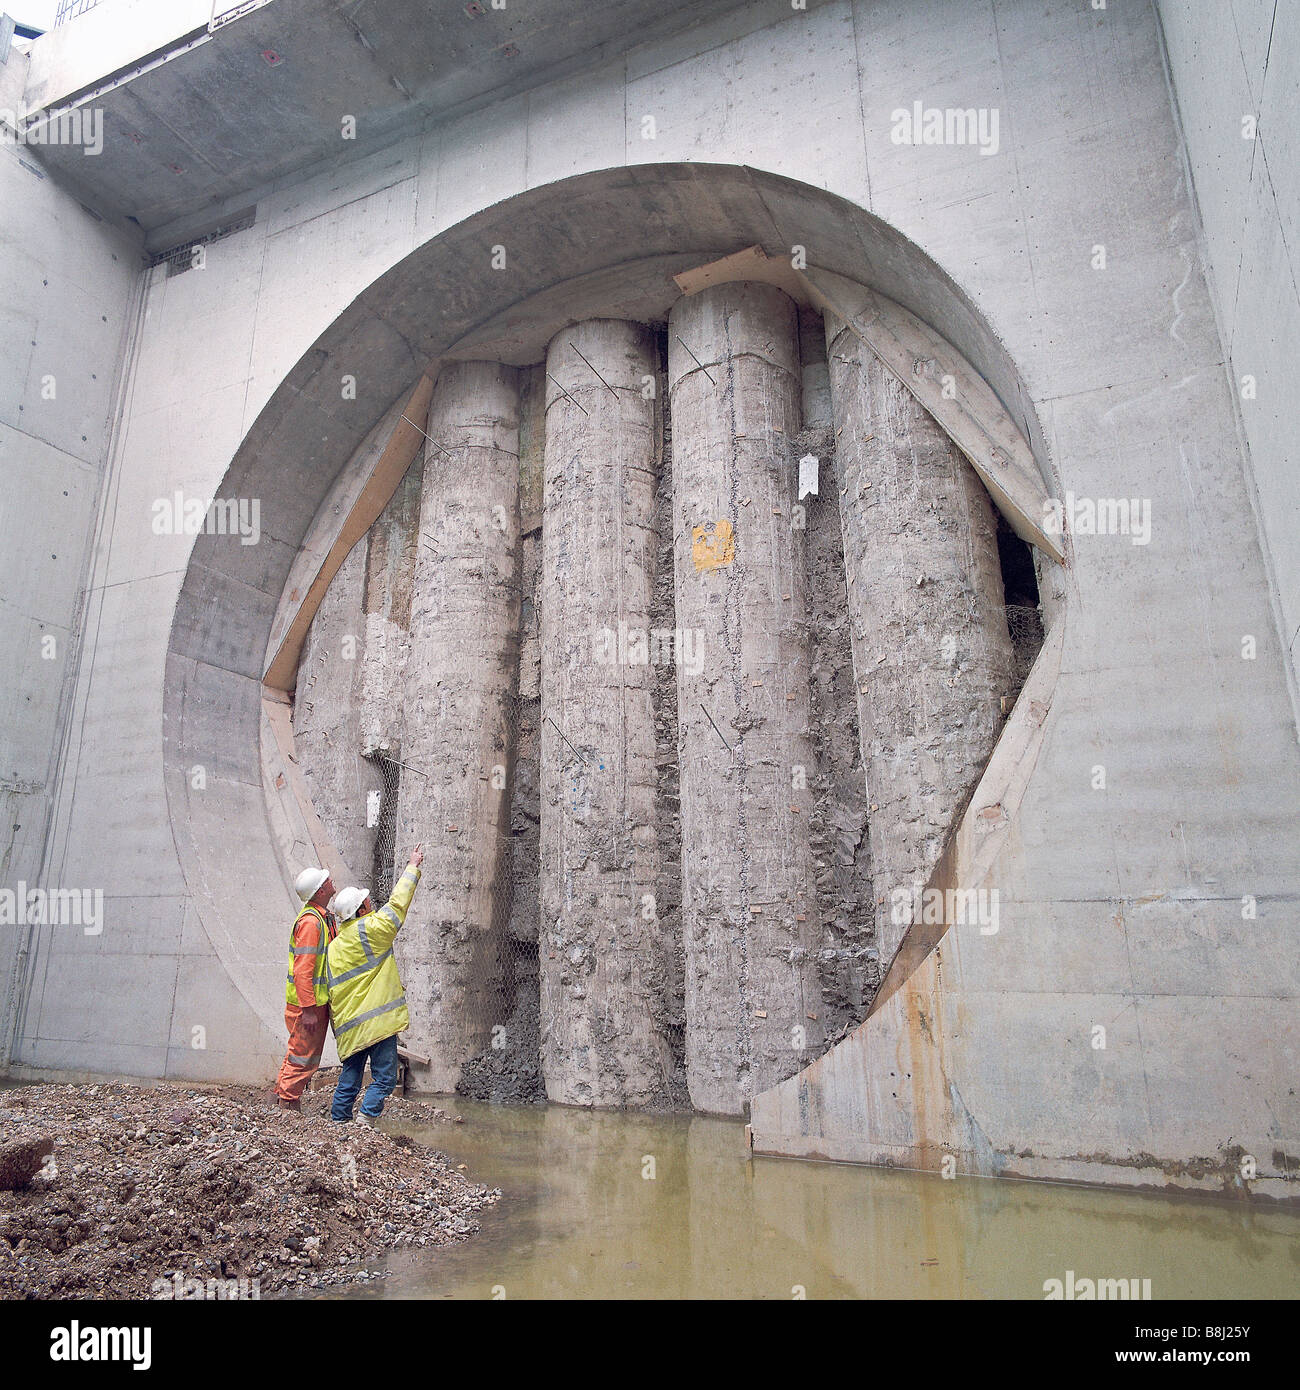 Esposti pali di fondazione visibili nel portale di una strada sterrata tunnel. Queste pile sarà rimossa per completare la struttura Foto Stock